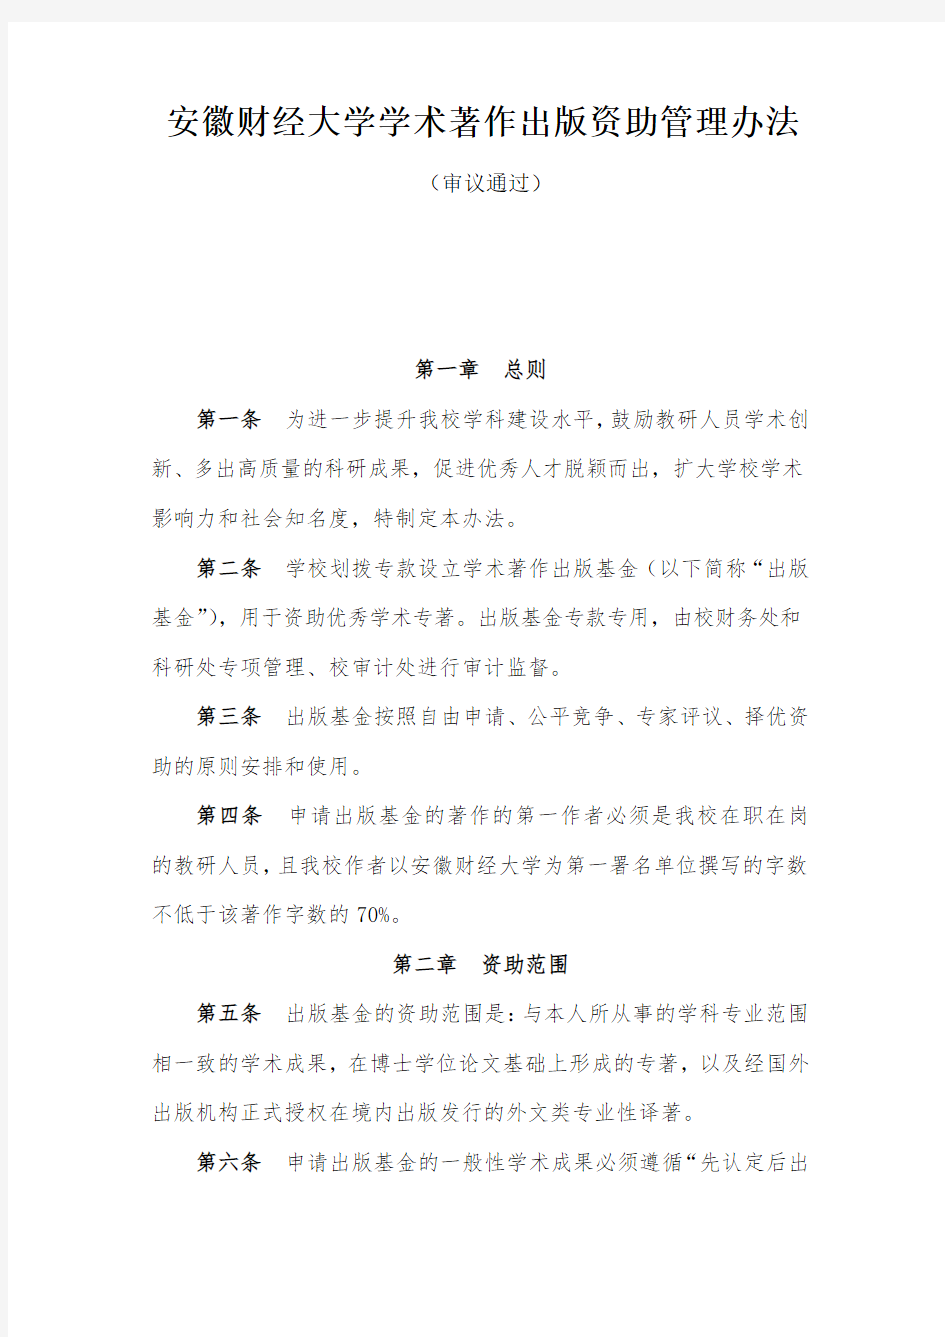 安徽财经大学学术著作出版资助管理办法(2014年12月2日)